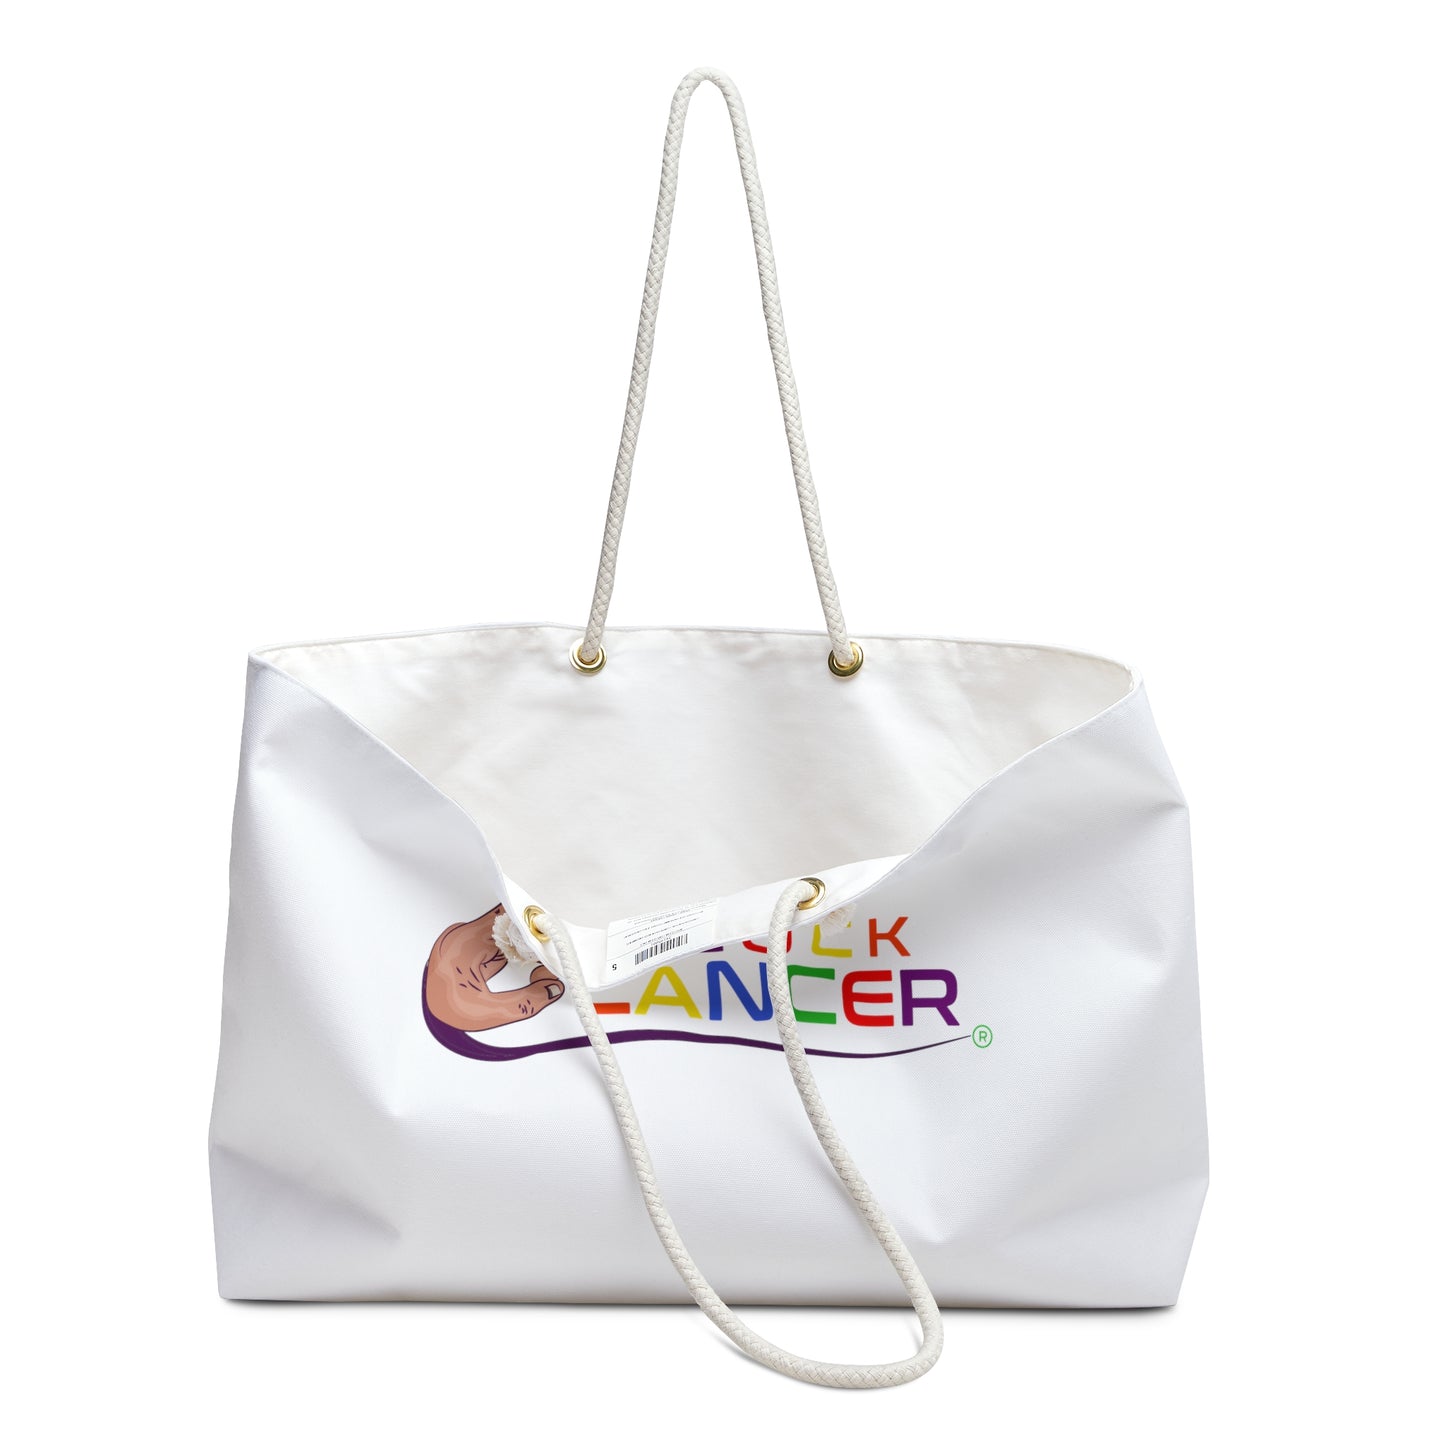 Weekender Bag-"PLUCK CANCER"